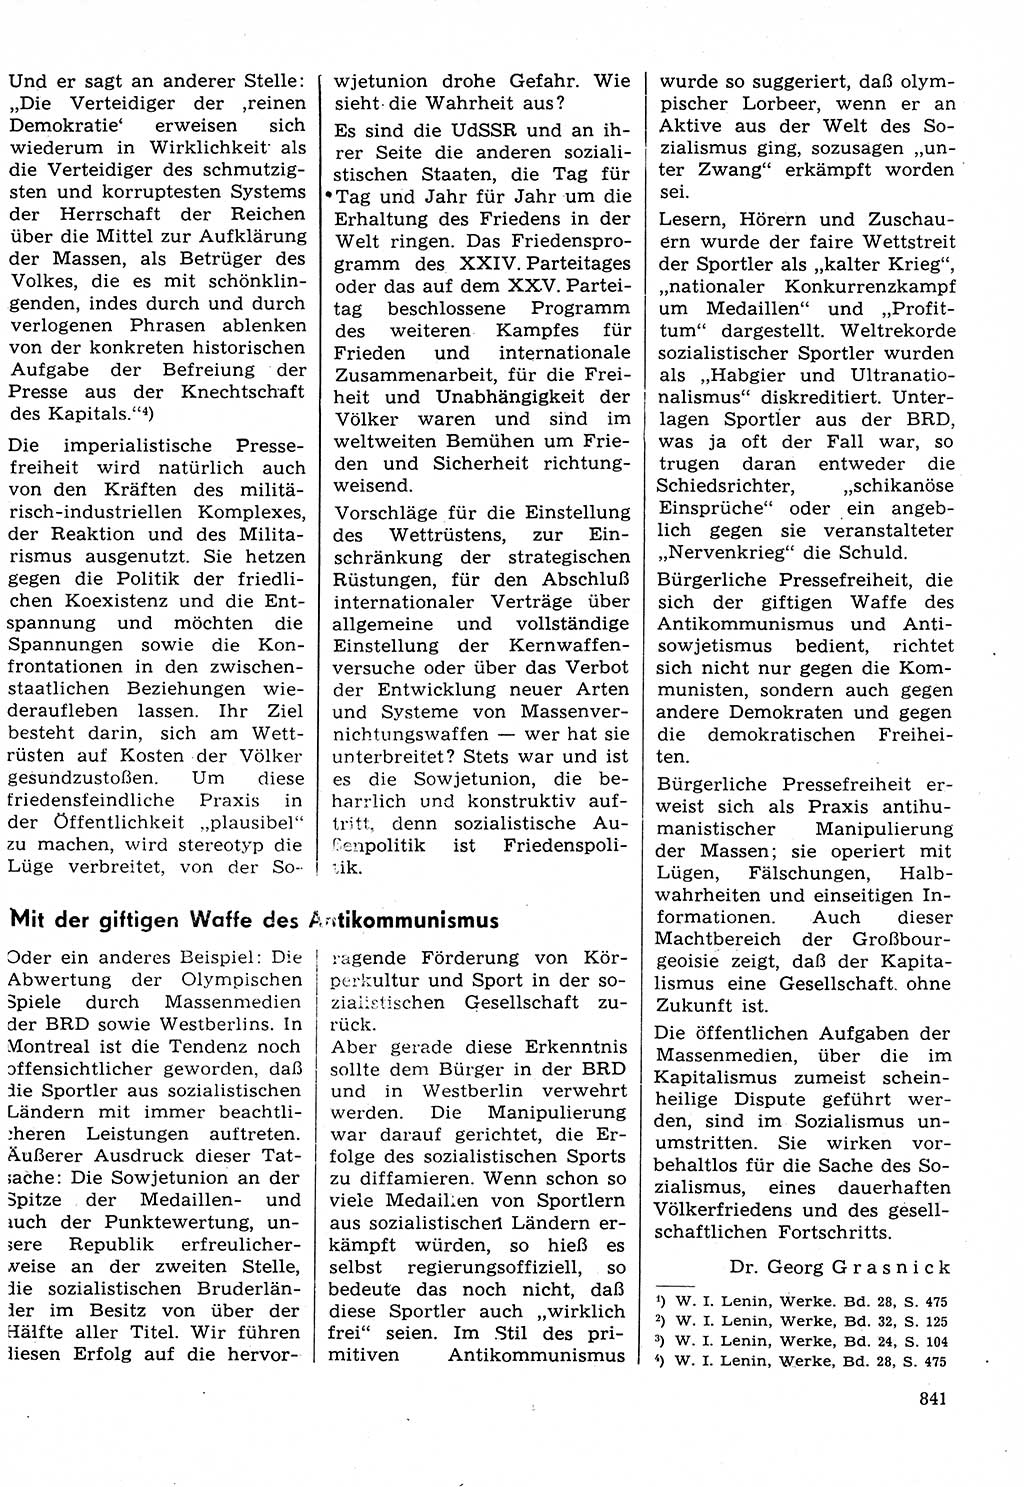 Neuer Weg (NW), Organ des Zentralkomitees (ZK) der SED (Sozialistische Einheitspartei Deutschlands) für Fragen des Parteilebens, 31. Jahrgang [Deutsche Demokratische Republik (DDR)] 1976, Seite 841 (NW ZK SED DDR 1976, S. 841)